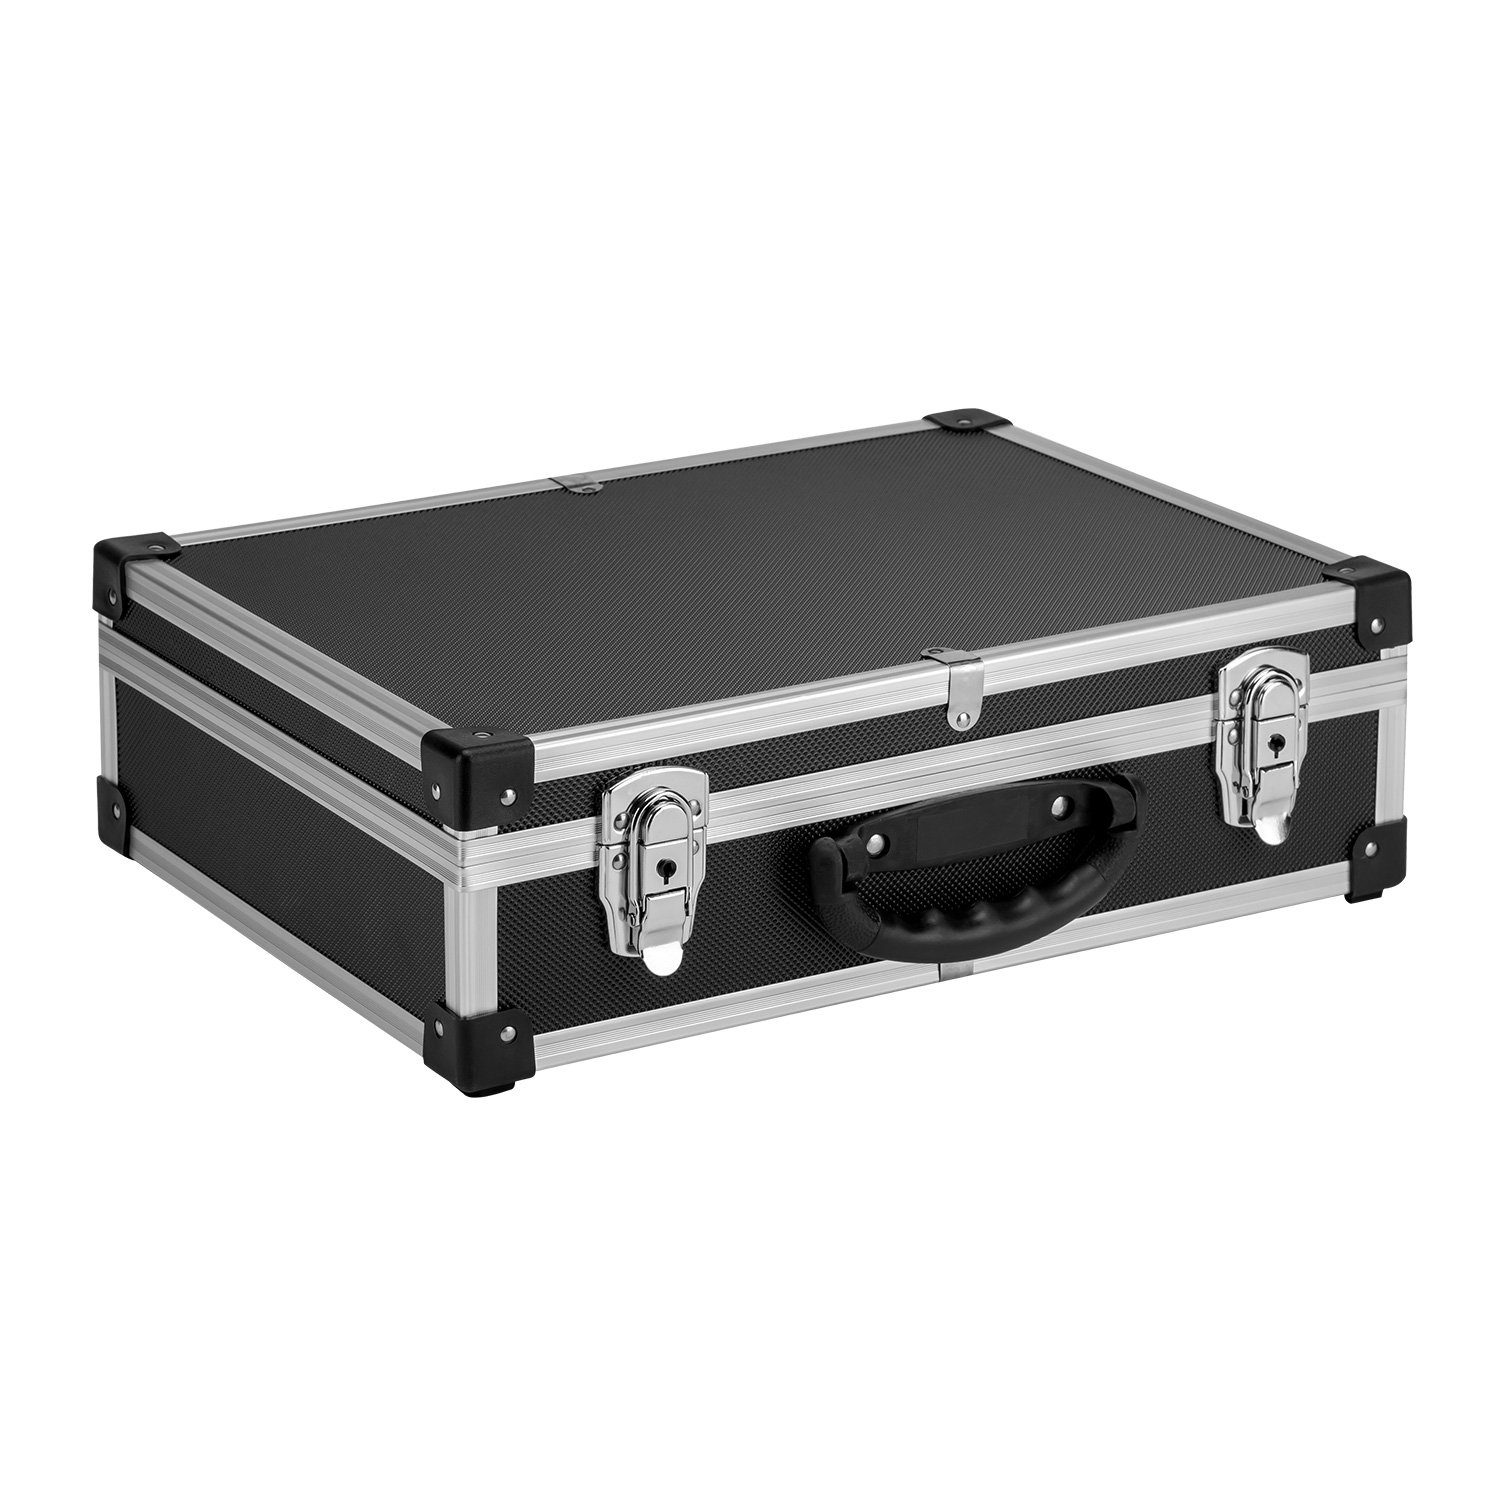 Alukoffer Set 2x Aluminiumkiste Werkzeugkiste Lagerbox schwarz Tragegurt 